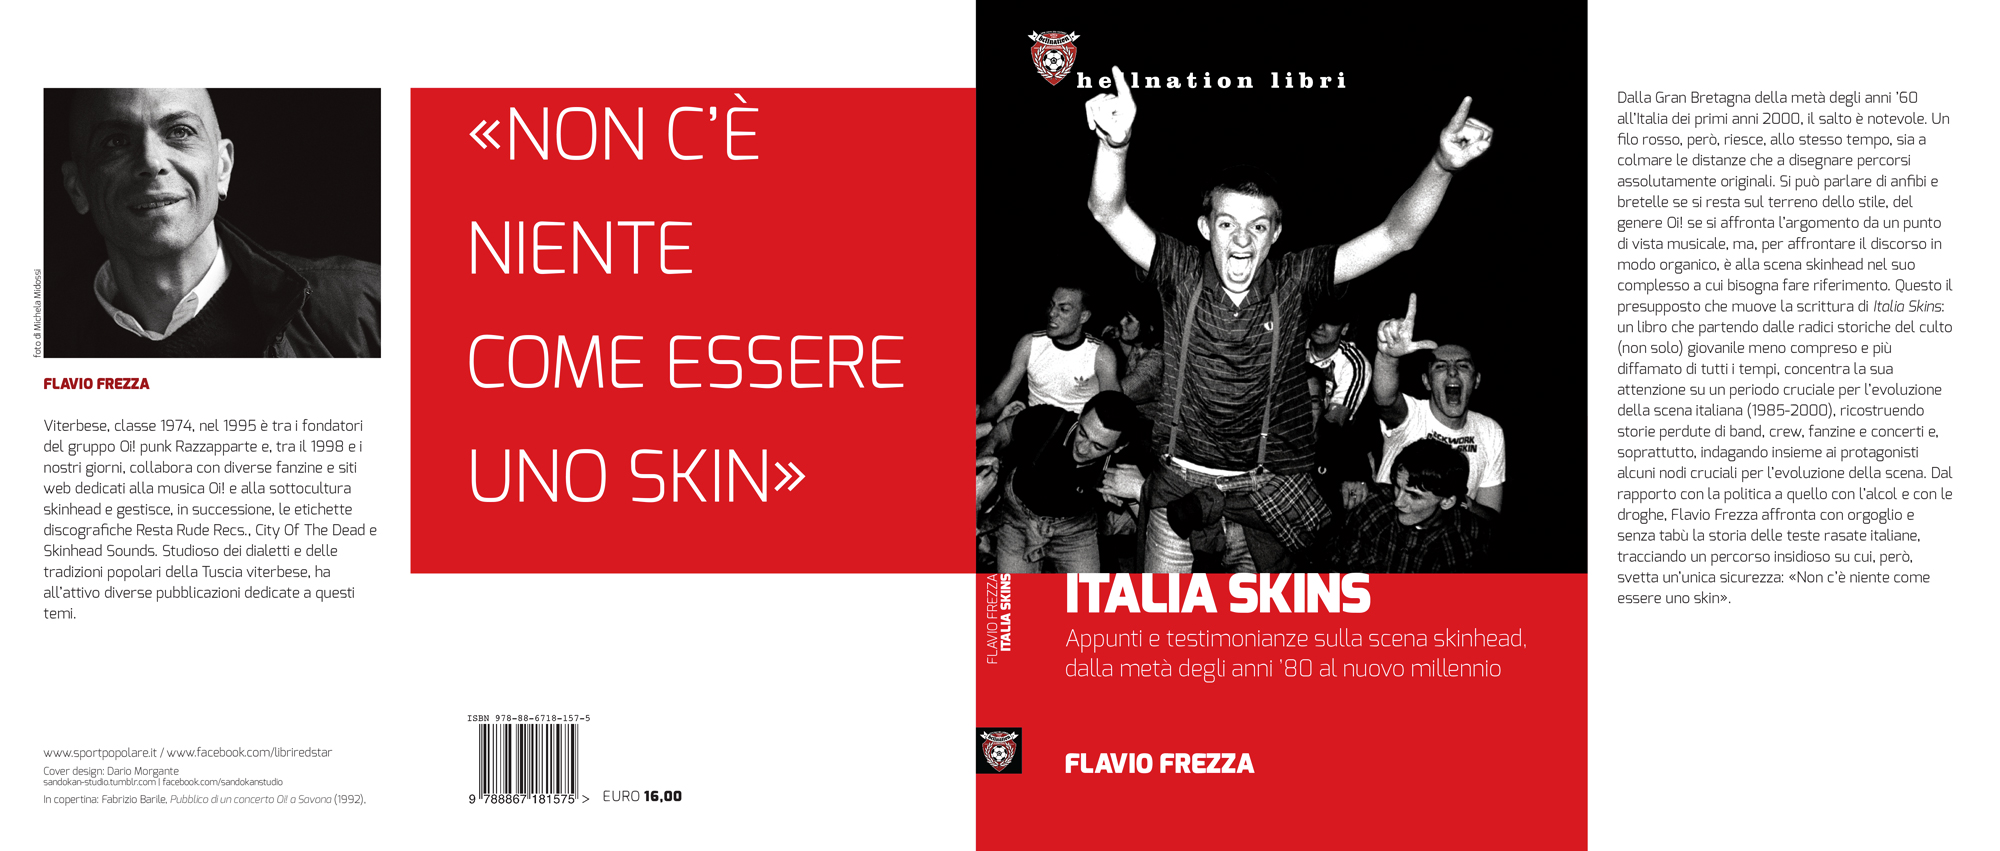 Fronte e retro del libro "Italia Skins"